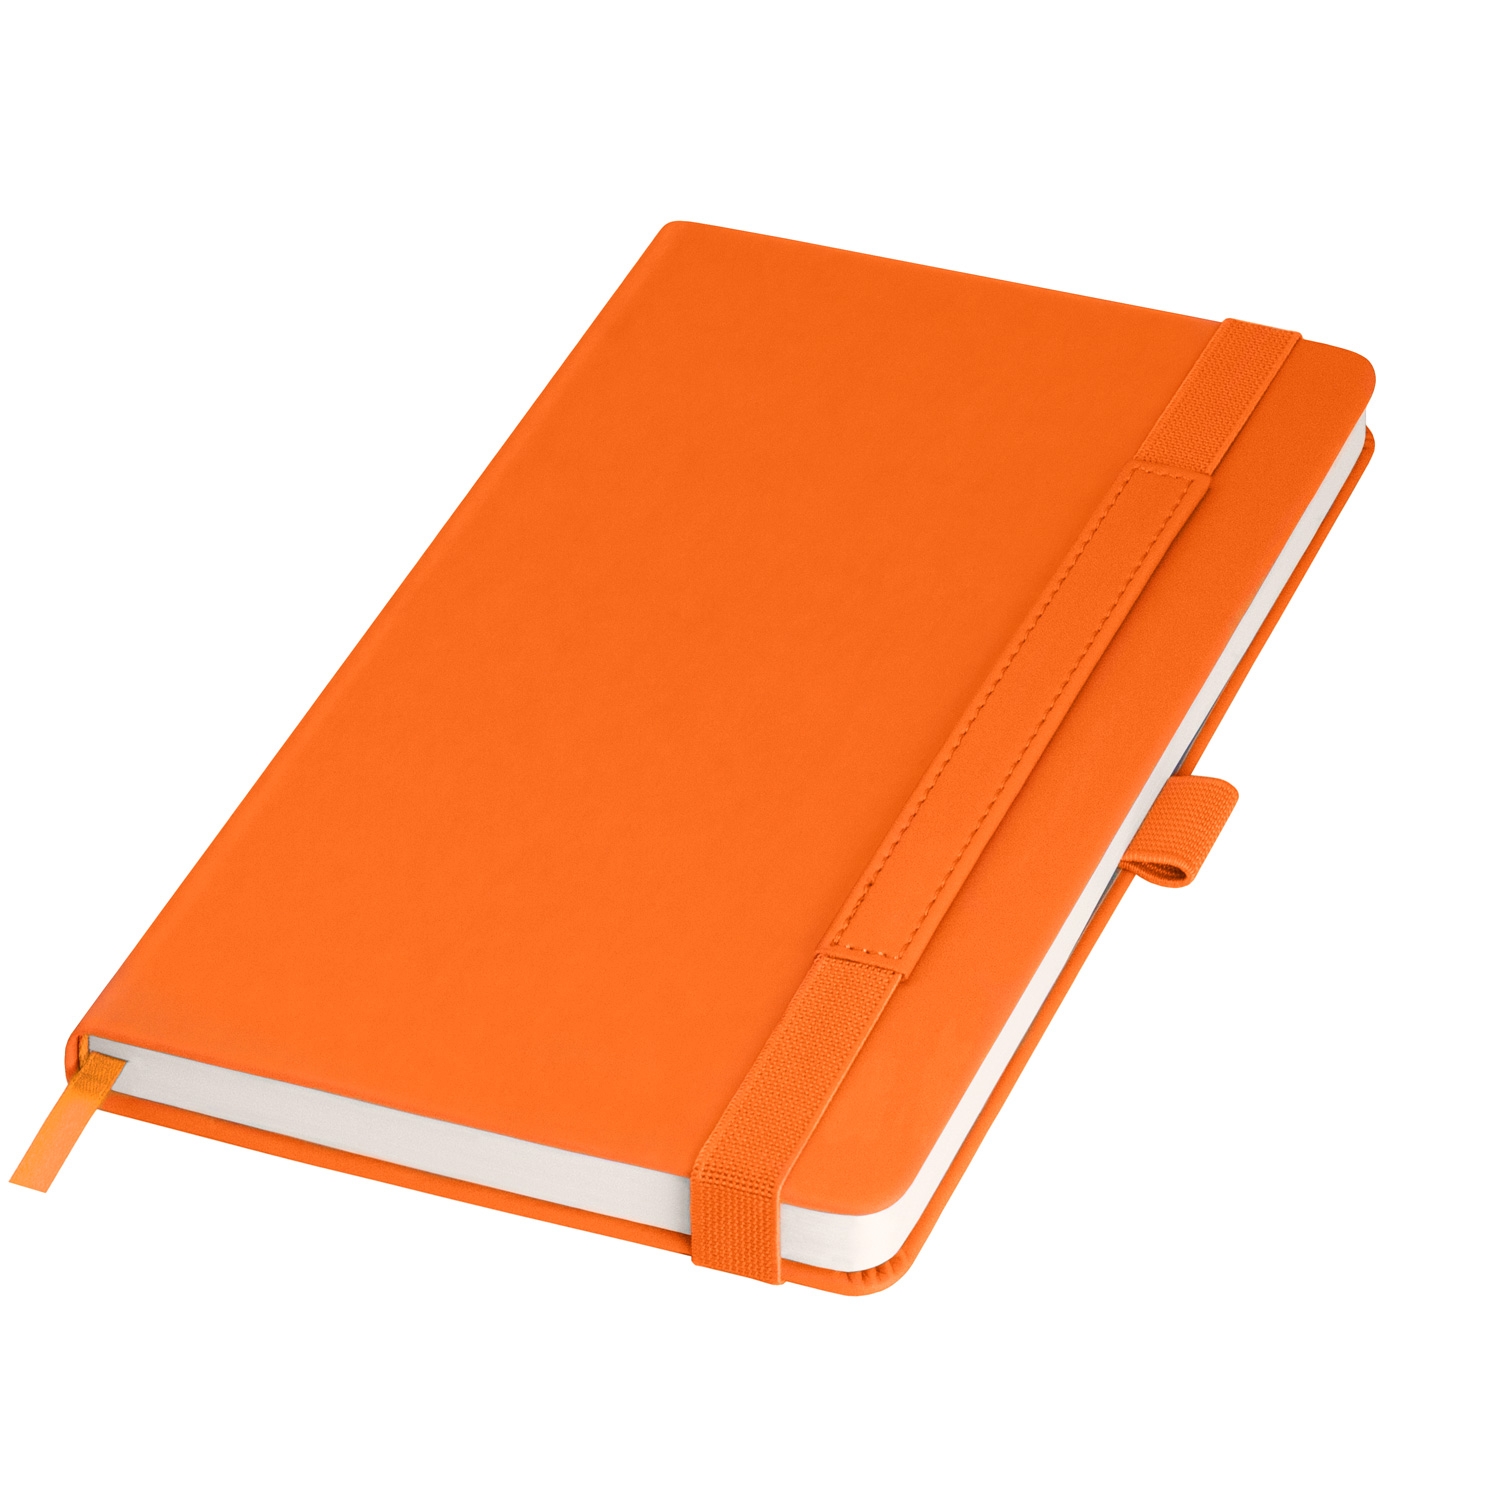 Ежедневник Alpha недатированный, оранжевый/коричневый, оранжевый